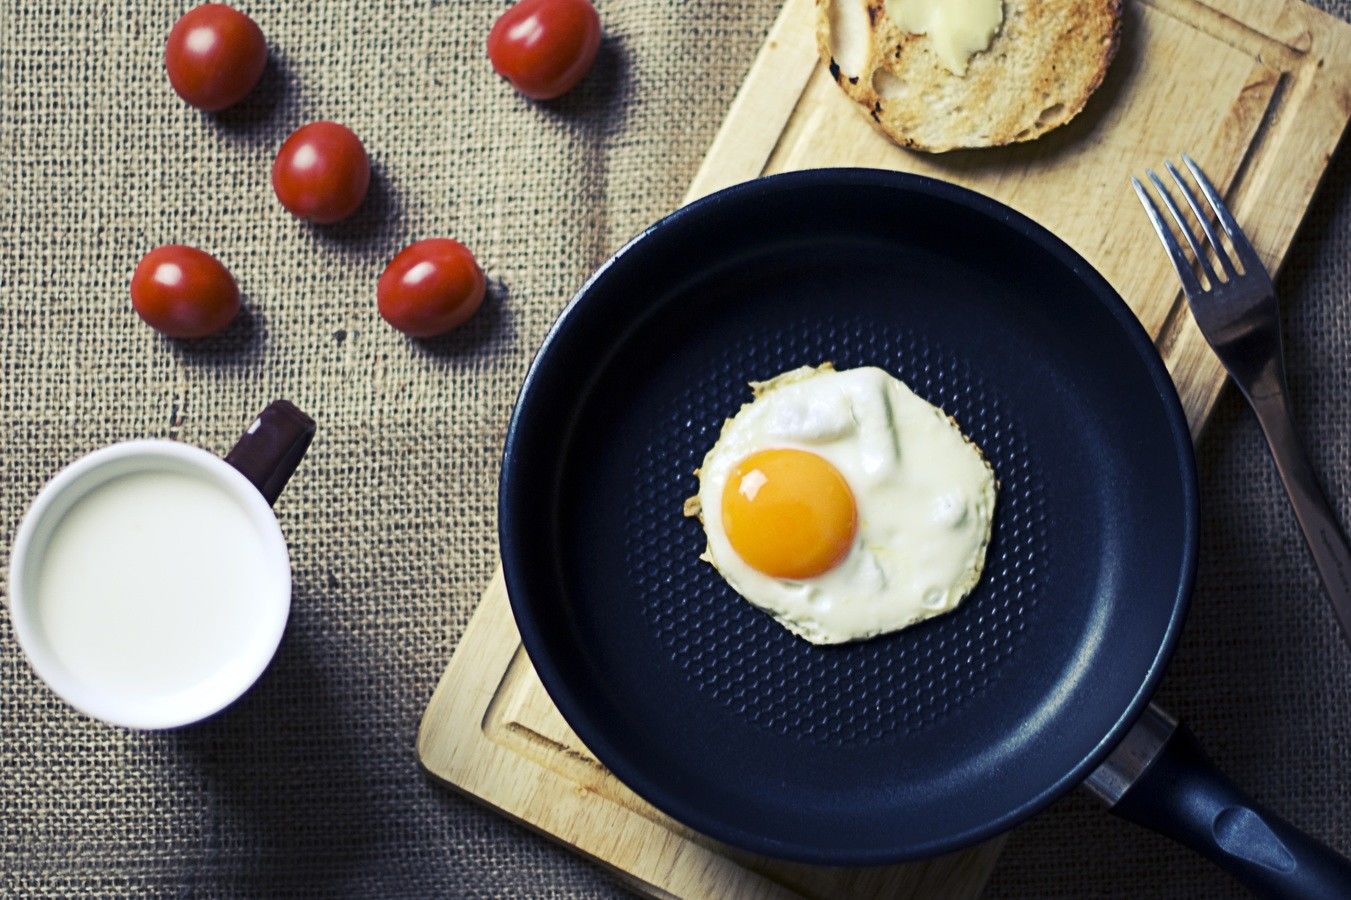 Makan Telur Gak Bikin Gemuk Lho, Nih 4 Fakta yang Perlu Kamu Tahu!